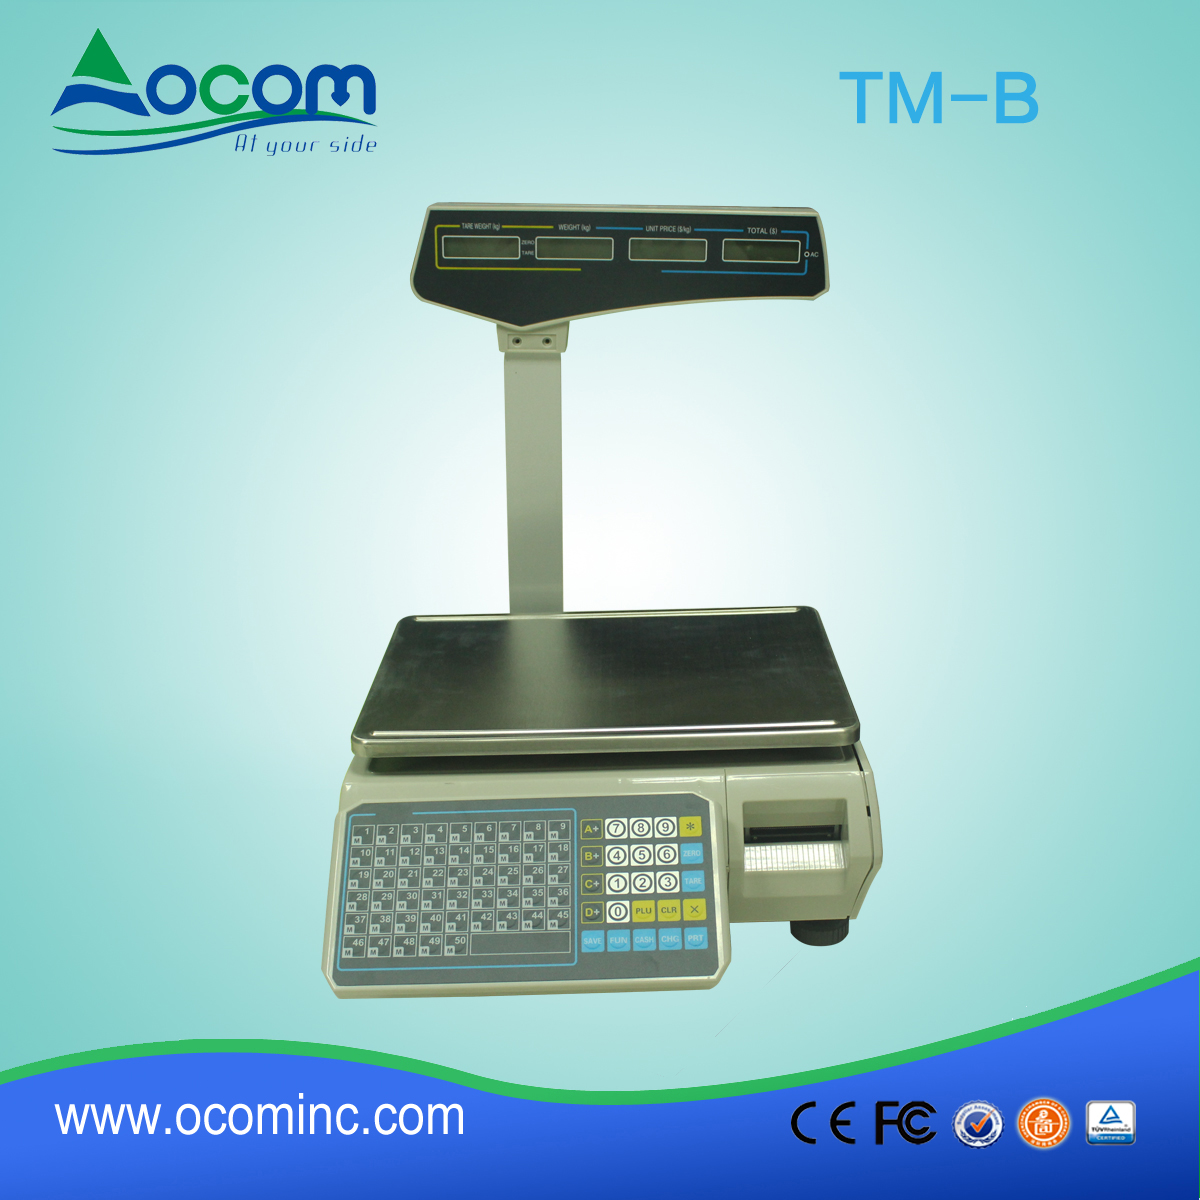 TM-B الالكترونية وزنها مقياس تسمية الطباعة الباركود الطباعة